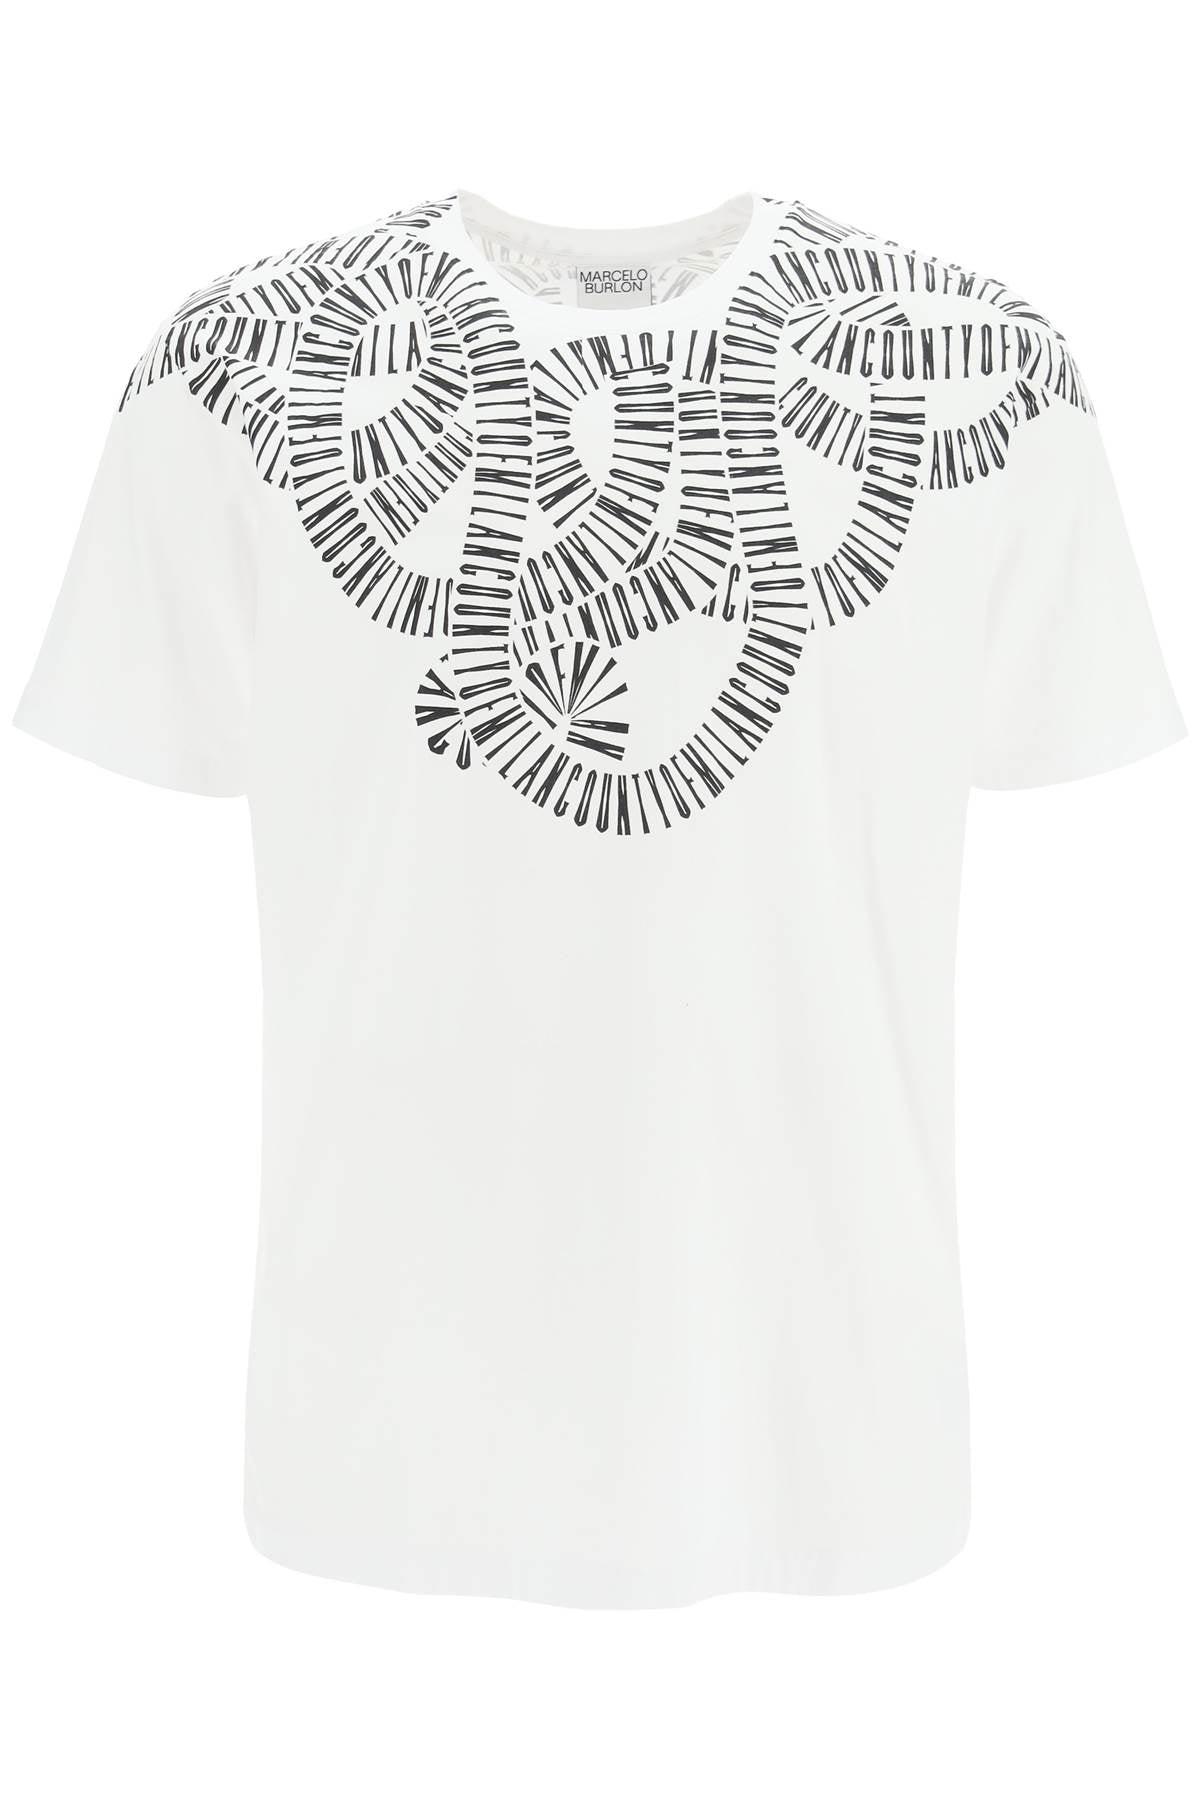 Marcelo Burlon Cotton Snake Wings T-shirt in White Black (White) for Men -  Save 45% | Lyst